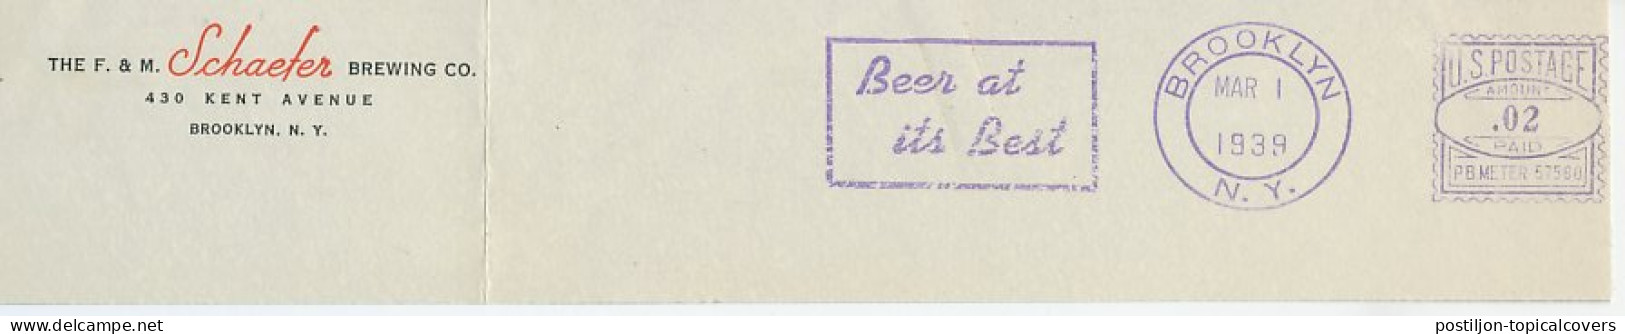 Meter Top Cut USA 1939 Beer - Schaefer  - Wines & Alcohols